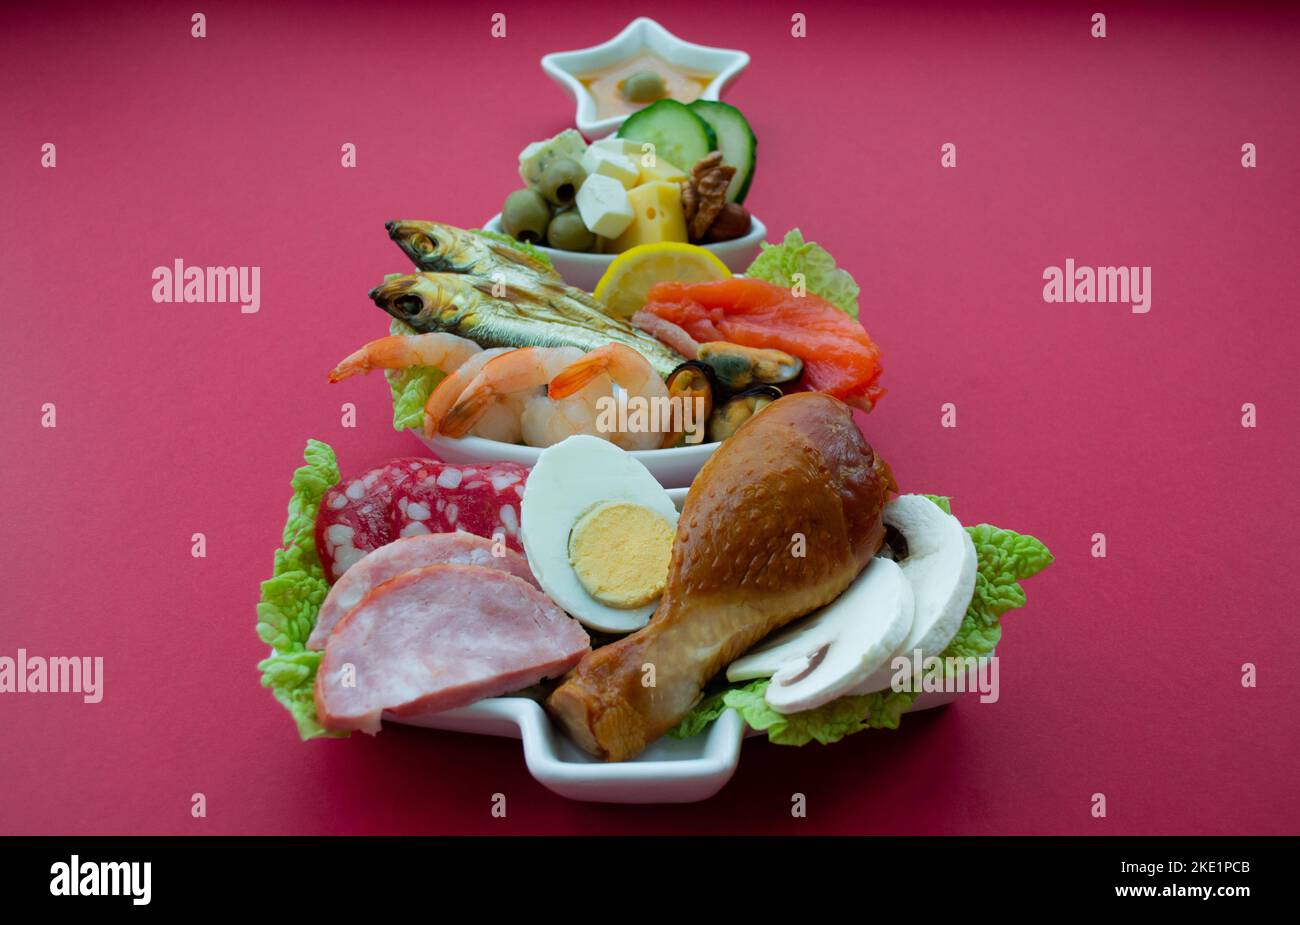 Teller in Form eines Weihnachtsbaums mit Eiweißfutter - Fleisch, Fisch, Käse, Nüsse, etc. Roter Hintergrund. Das Konzept der Keto-Diät behandelt für die holi Stockfoto